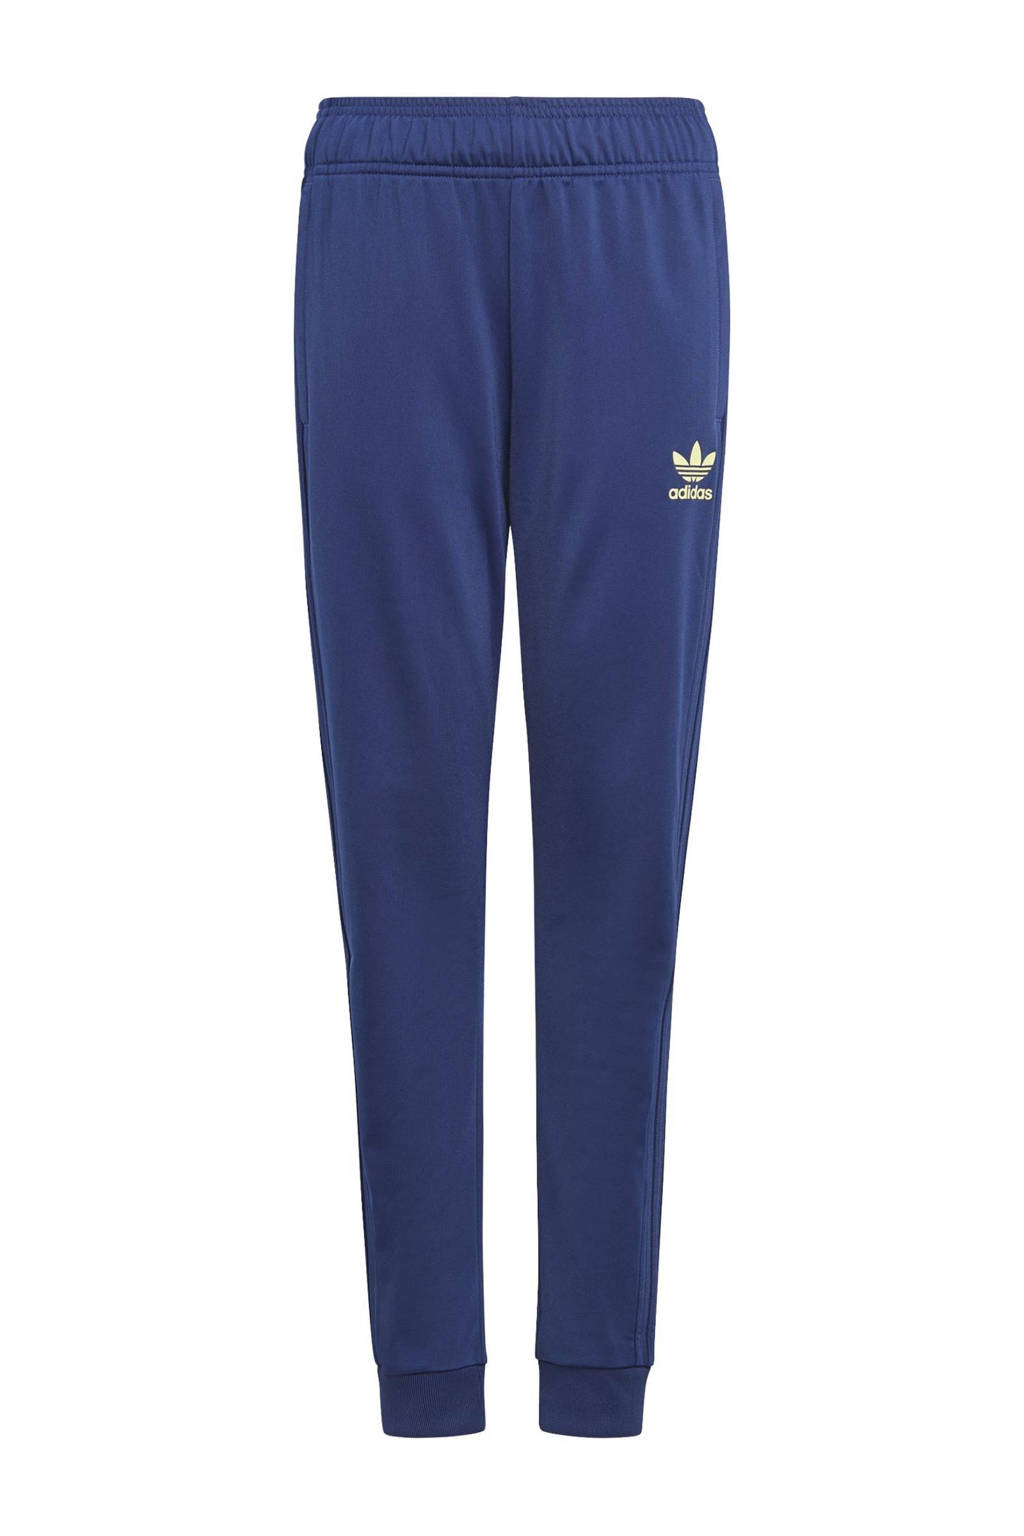 Donkerblauwe jongens adidas Originals regular fit joggingbroek Super Star Adicolor van katoen met elastische tailleband met koord en logo dessin